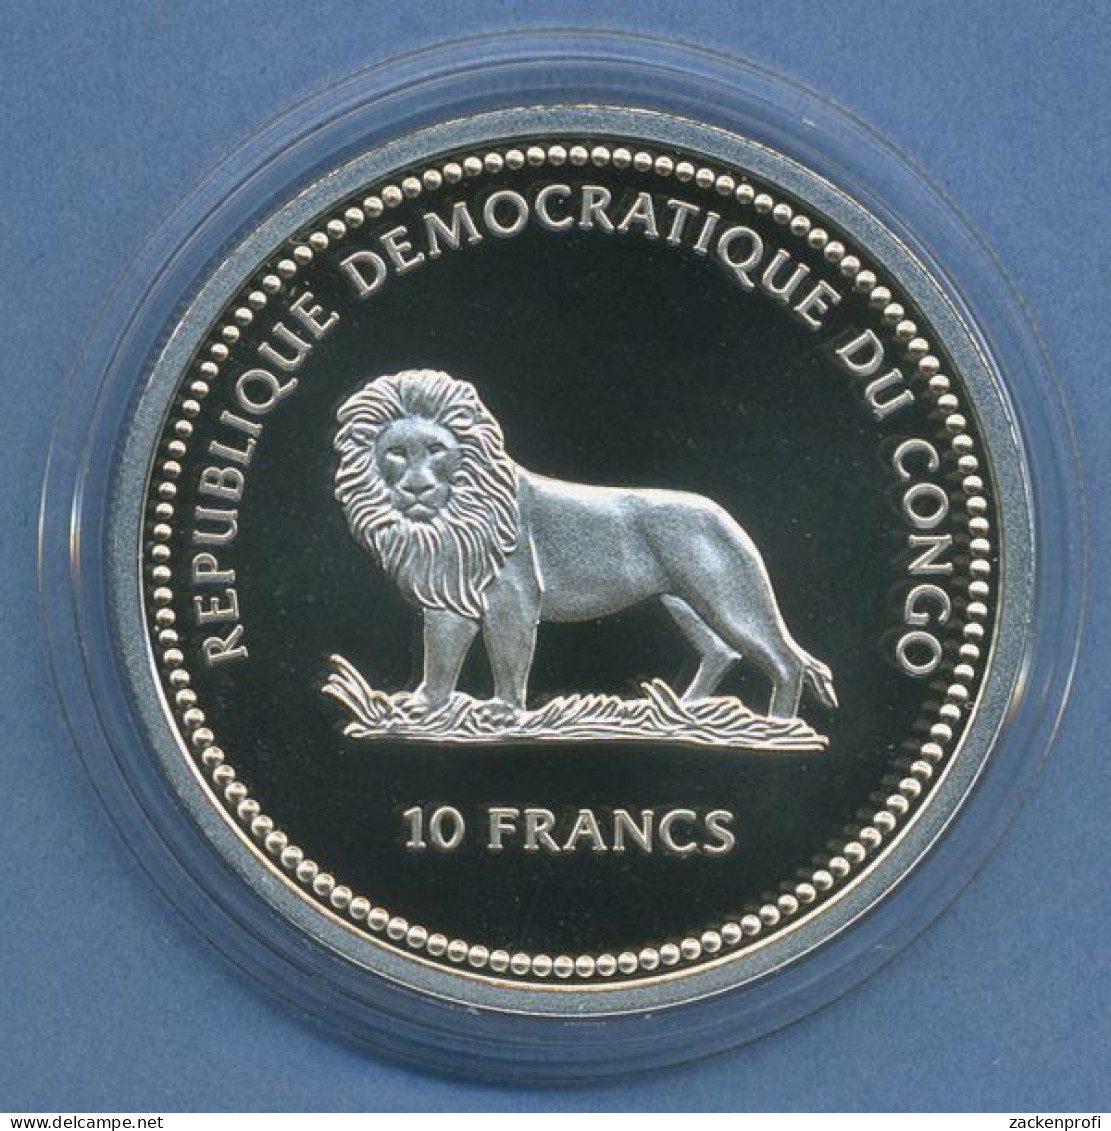 Kongo 10 Franc, 2000 Tierschutz Fische, Silber, Farbig, PP In Kapsel (m4417) - Congo (République Démocratique 1998)